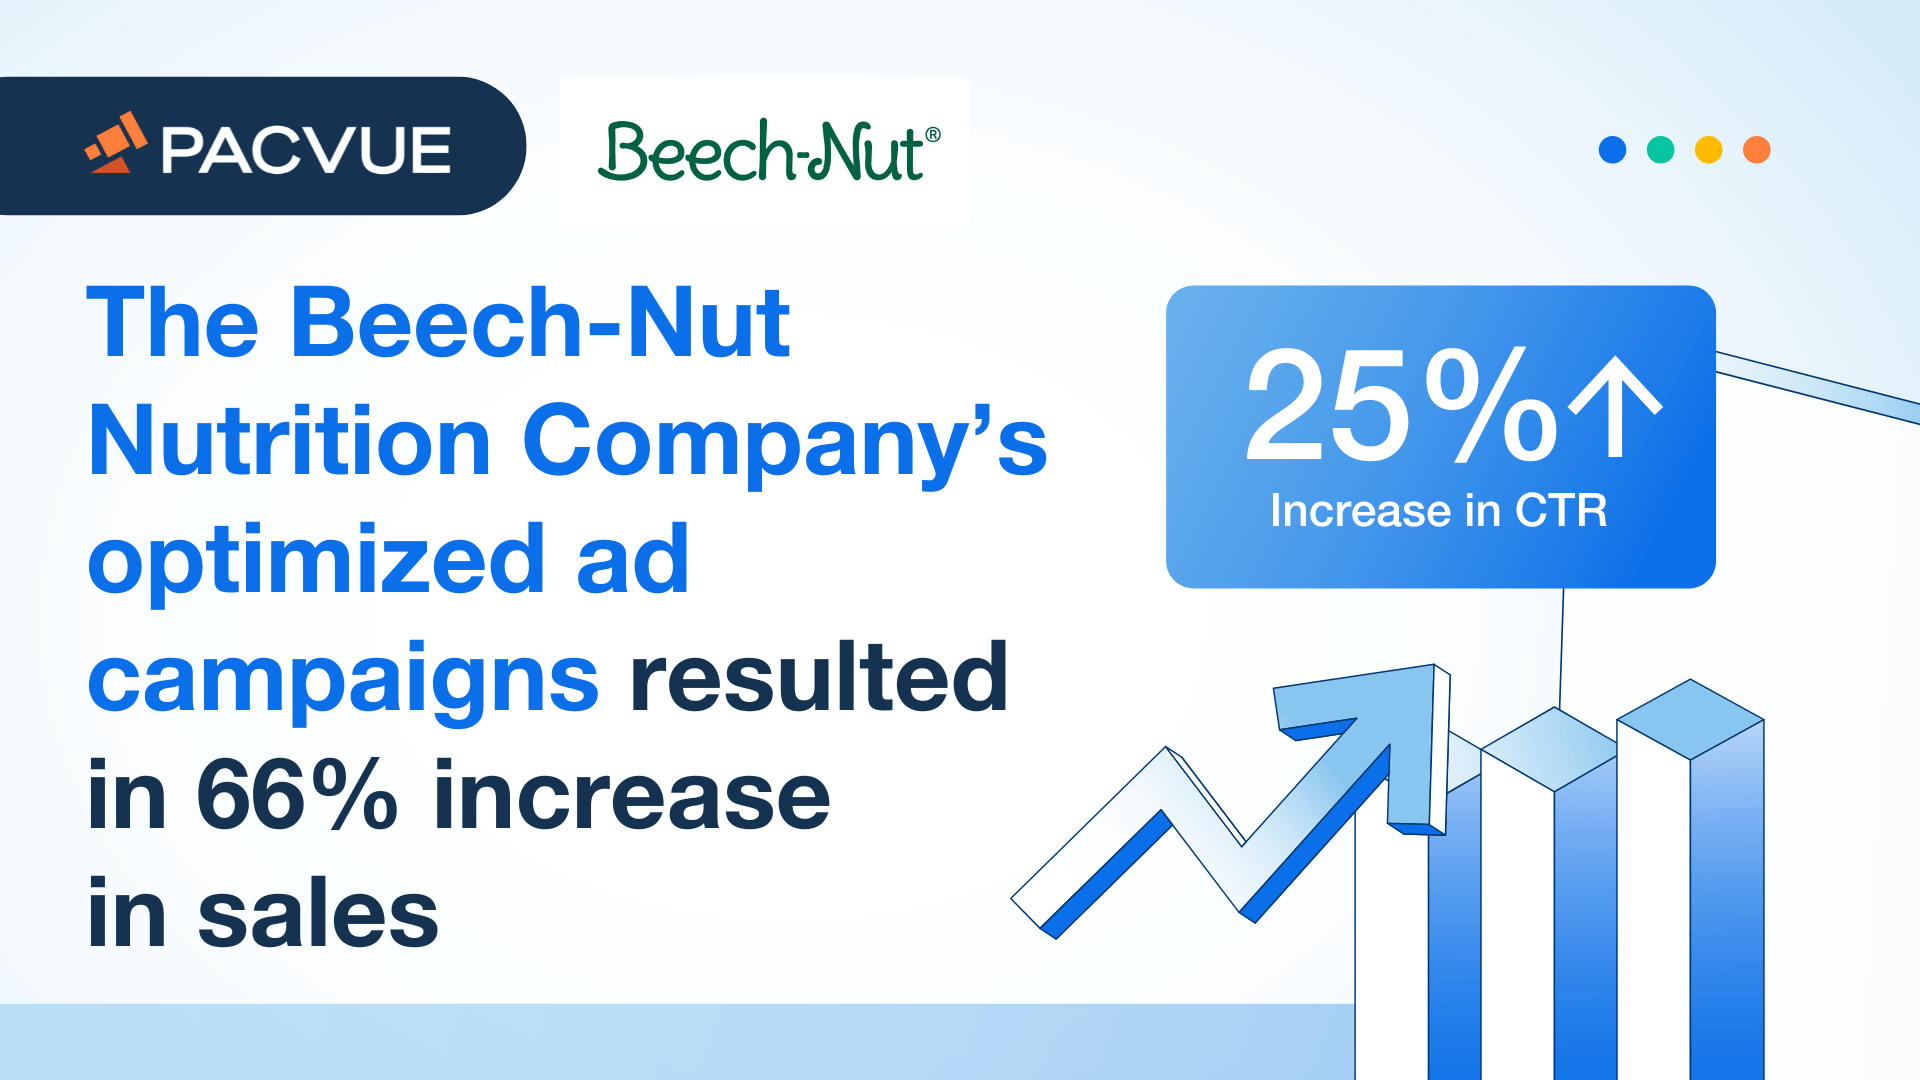 ビーナッツ・ニュートリション社の最適化された広告キャンペーンにより、売上が66％増加した。